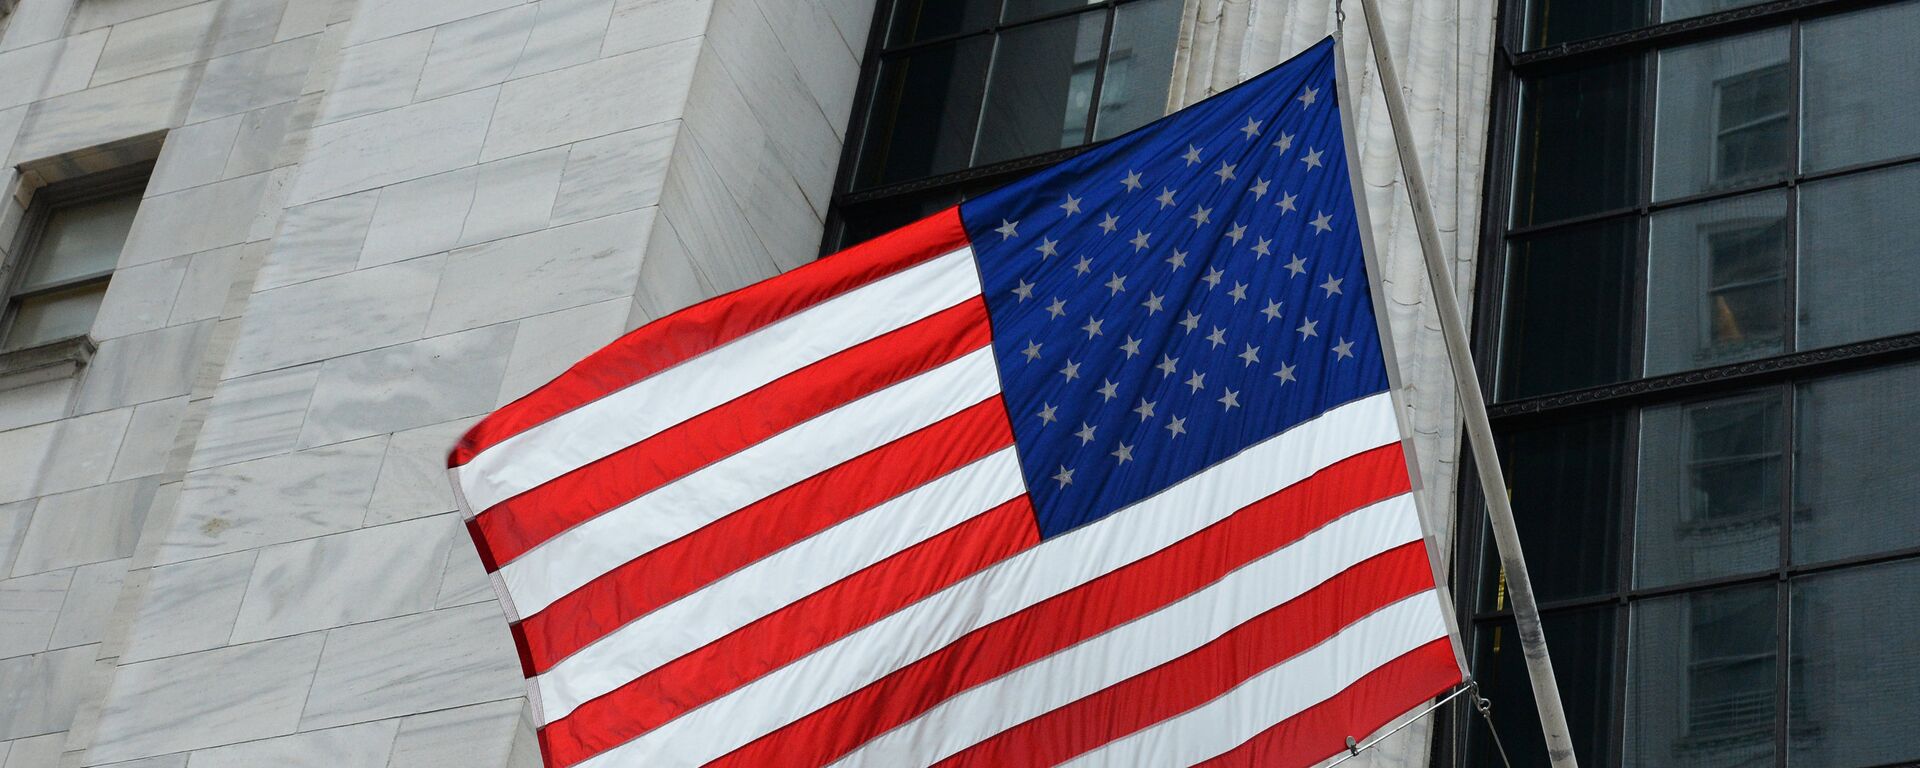 Флаг США на здании Нью-йоркской фондовой биржи на Уолл-стрит. - Sputnik Грузия, 1920, 26.12.2021